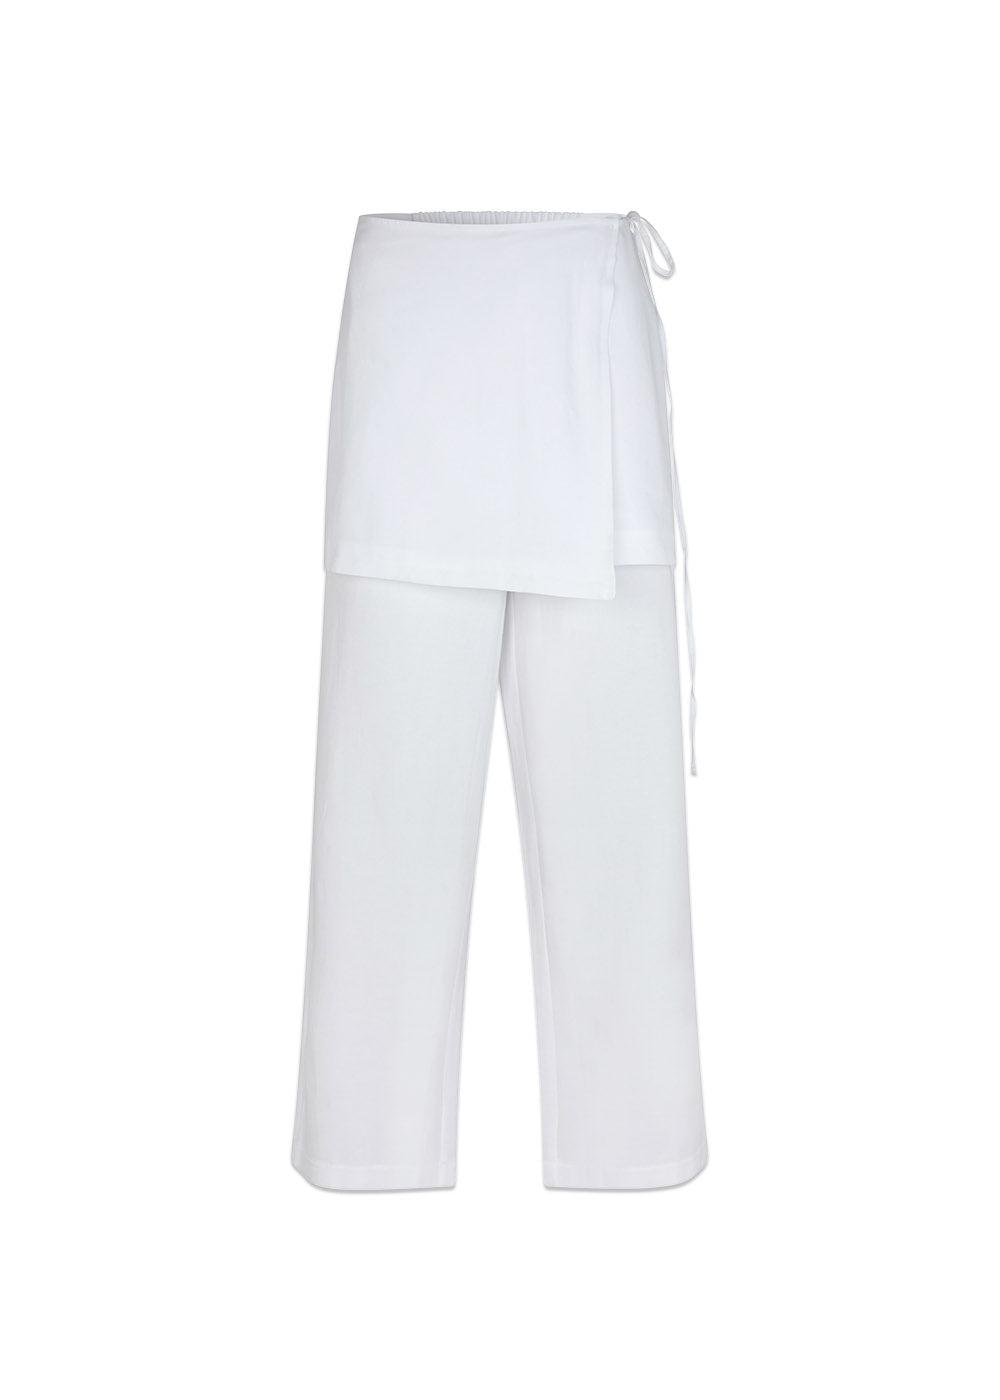 Luke Skirt Pants - White